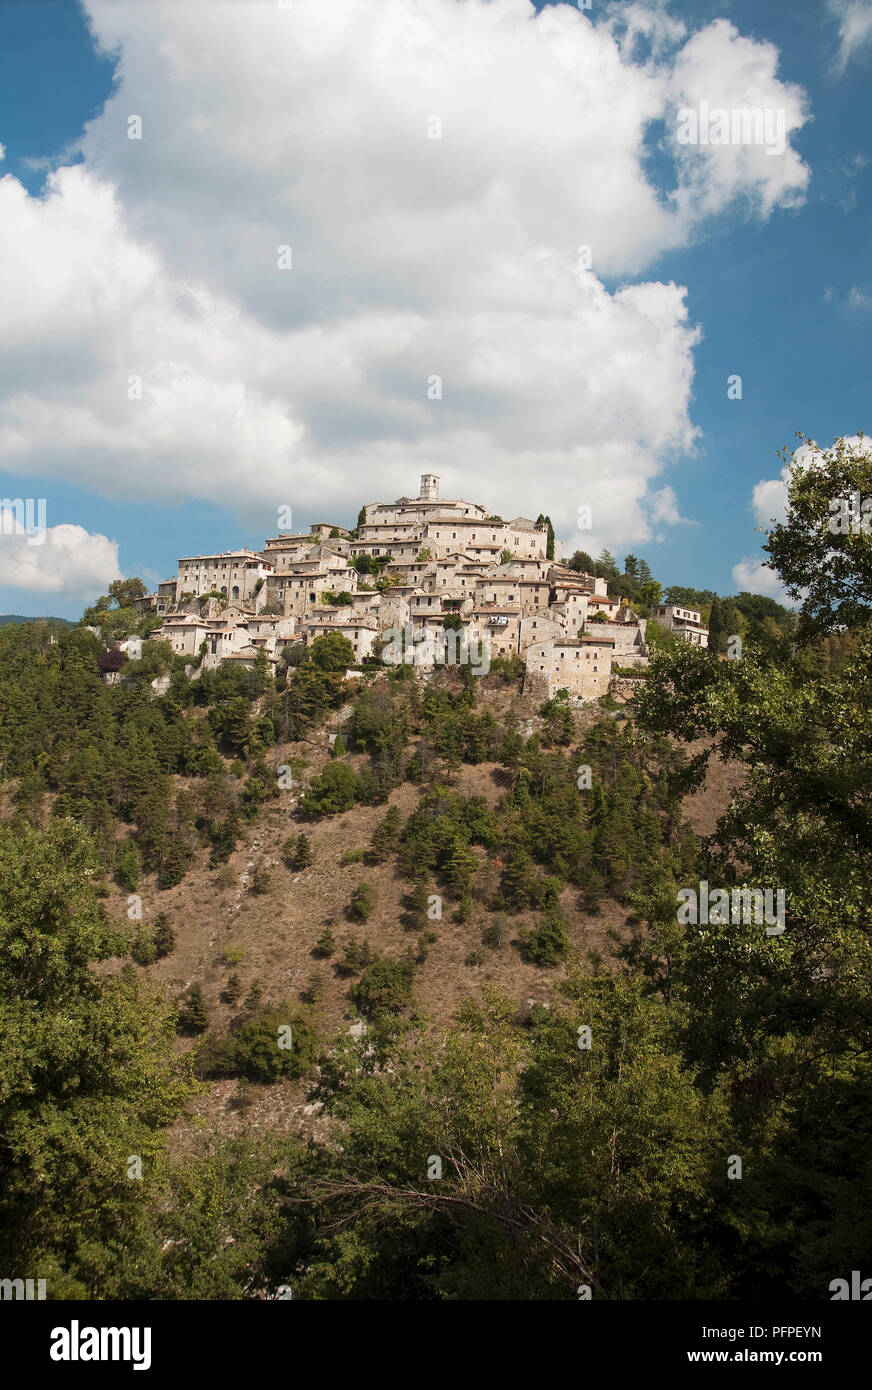 Italie, province de Rieti, village médiéval construit au sommet de la colline escarpée avec des nuages blancs et ciel bleu au-dessus Banque D'Images